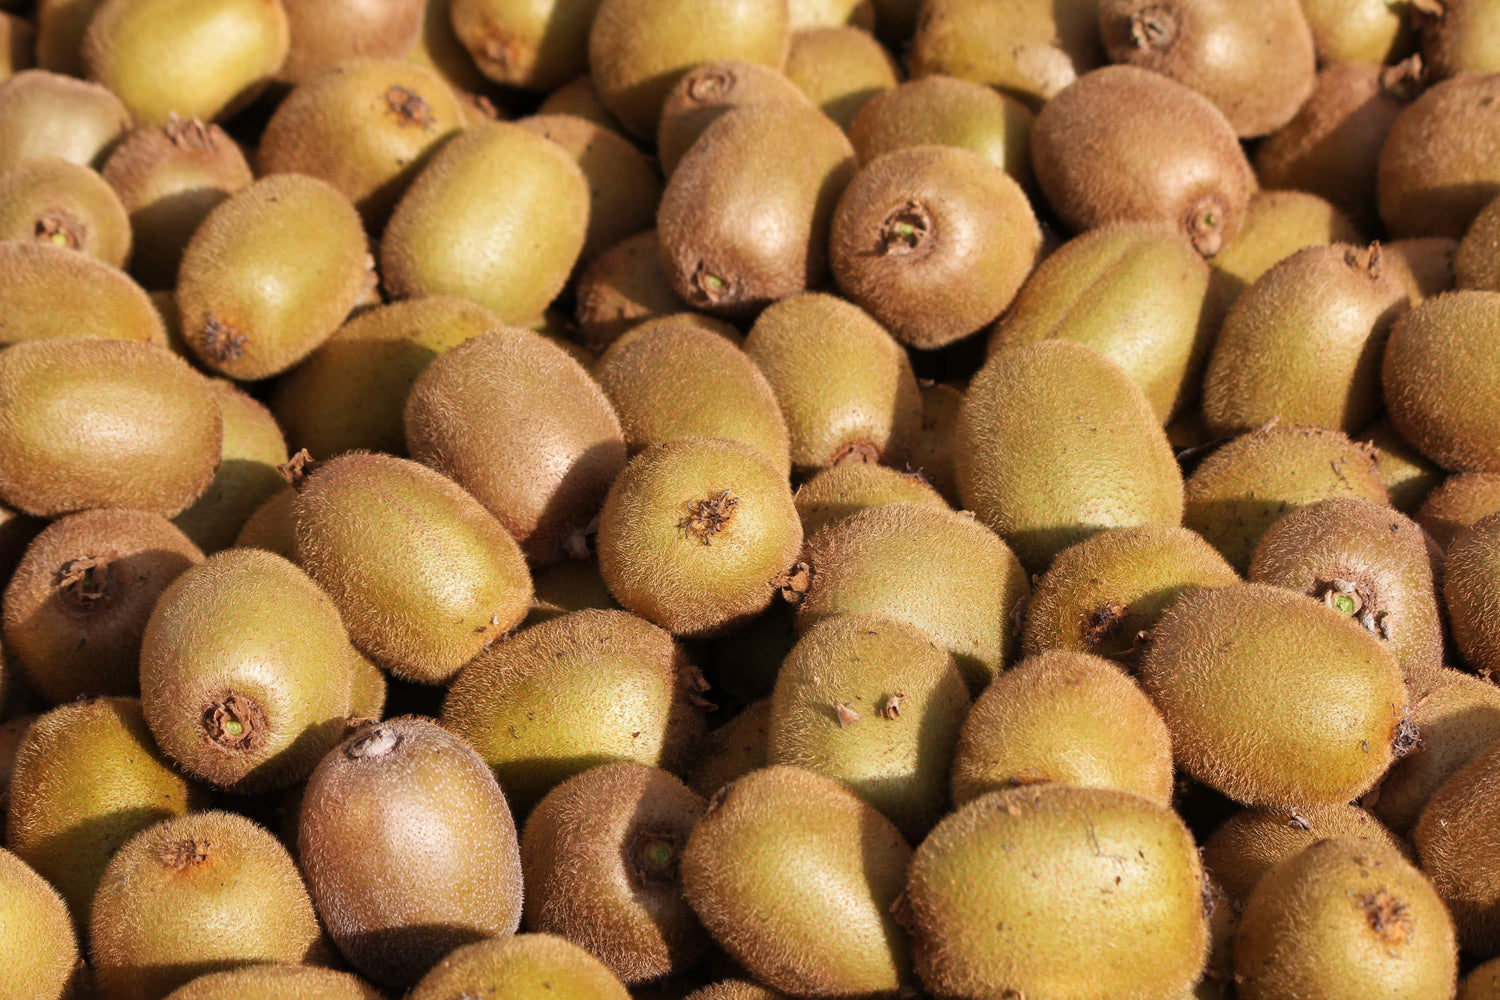 Kiwifruit Harvest, Fruit for Kiwifruit Jam and Relish